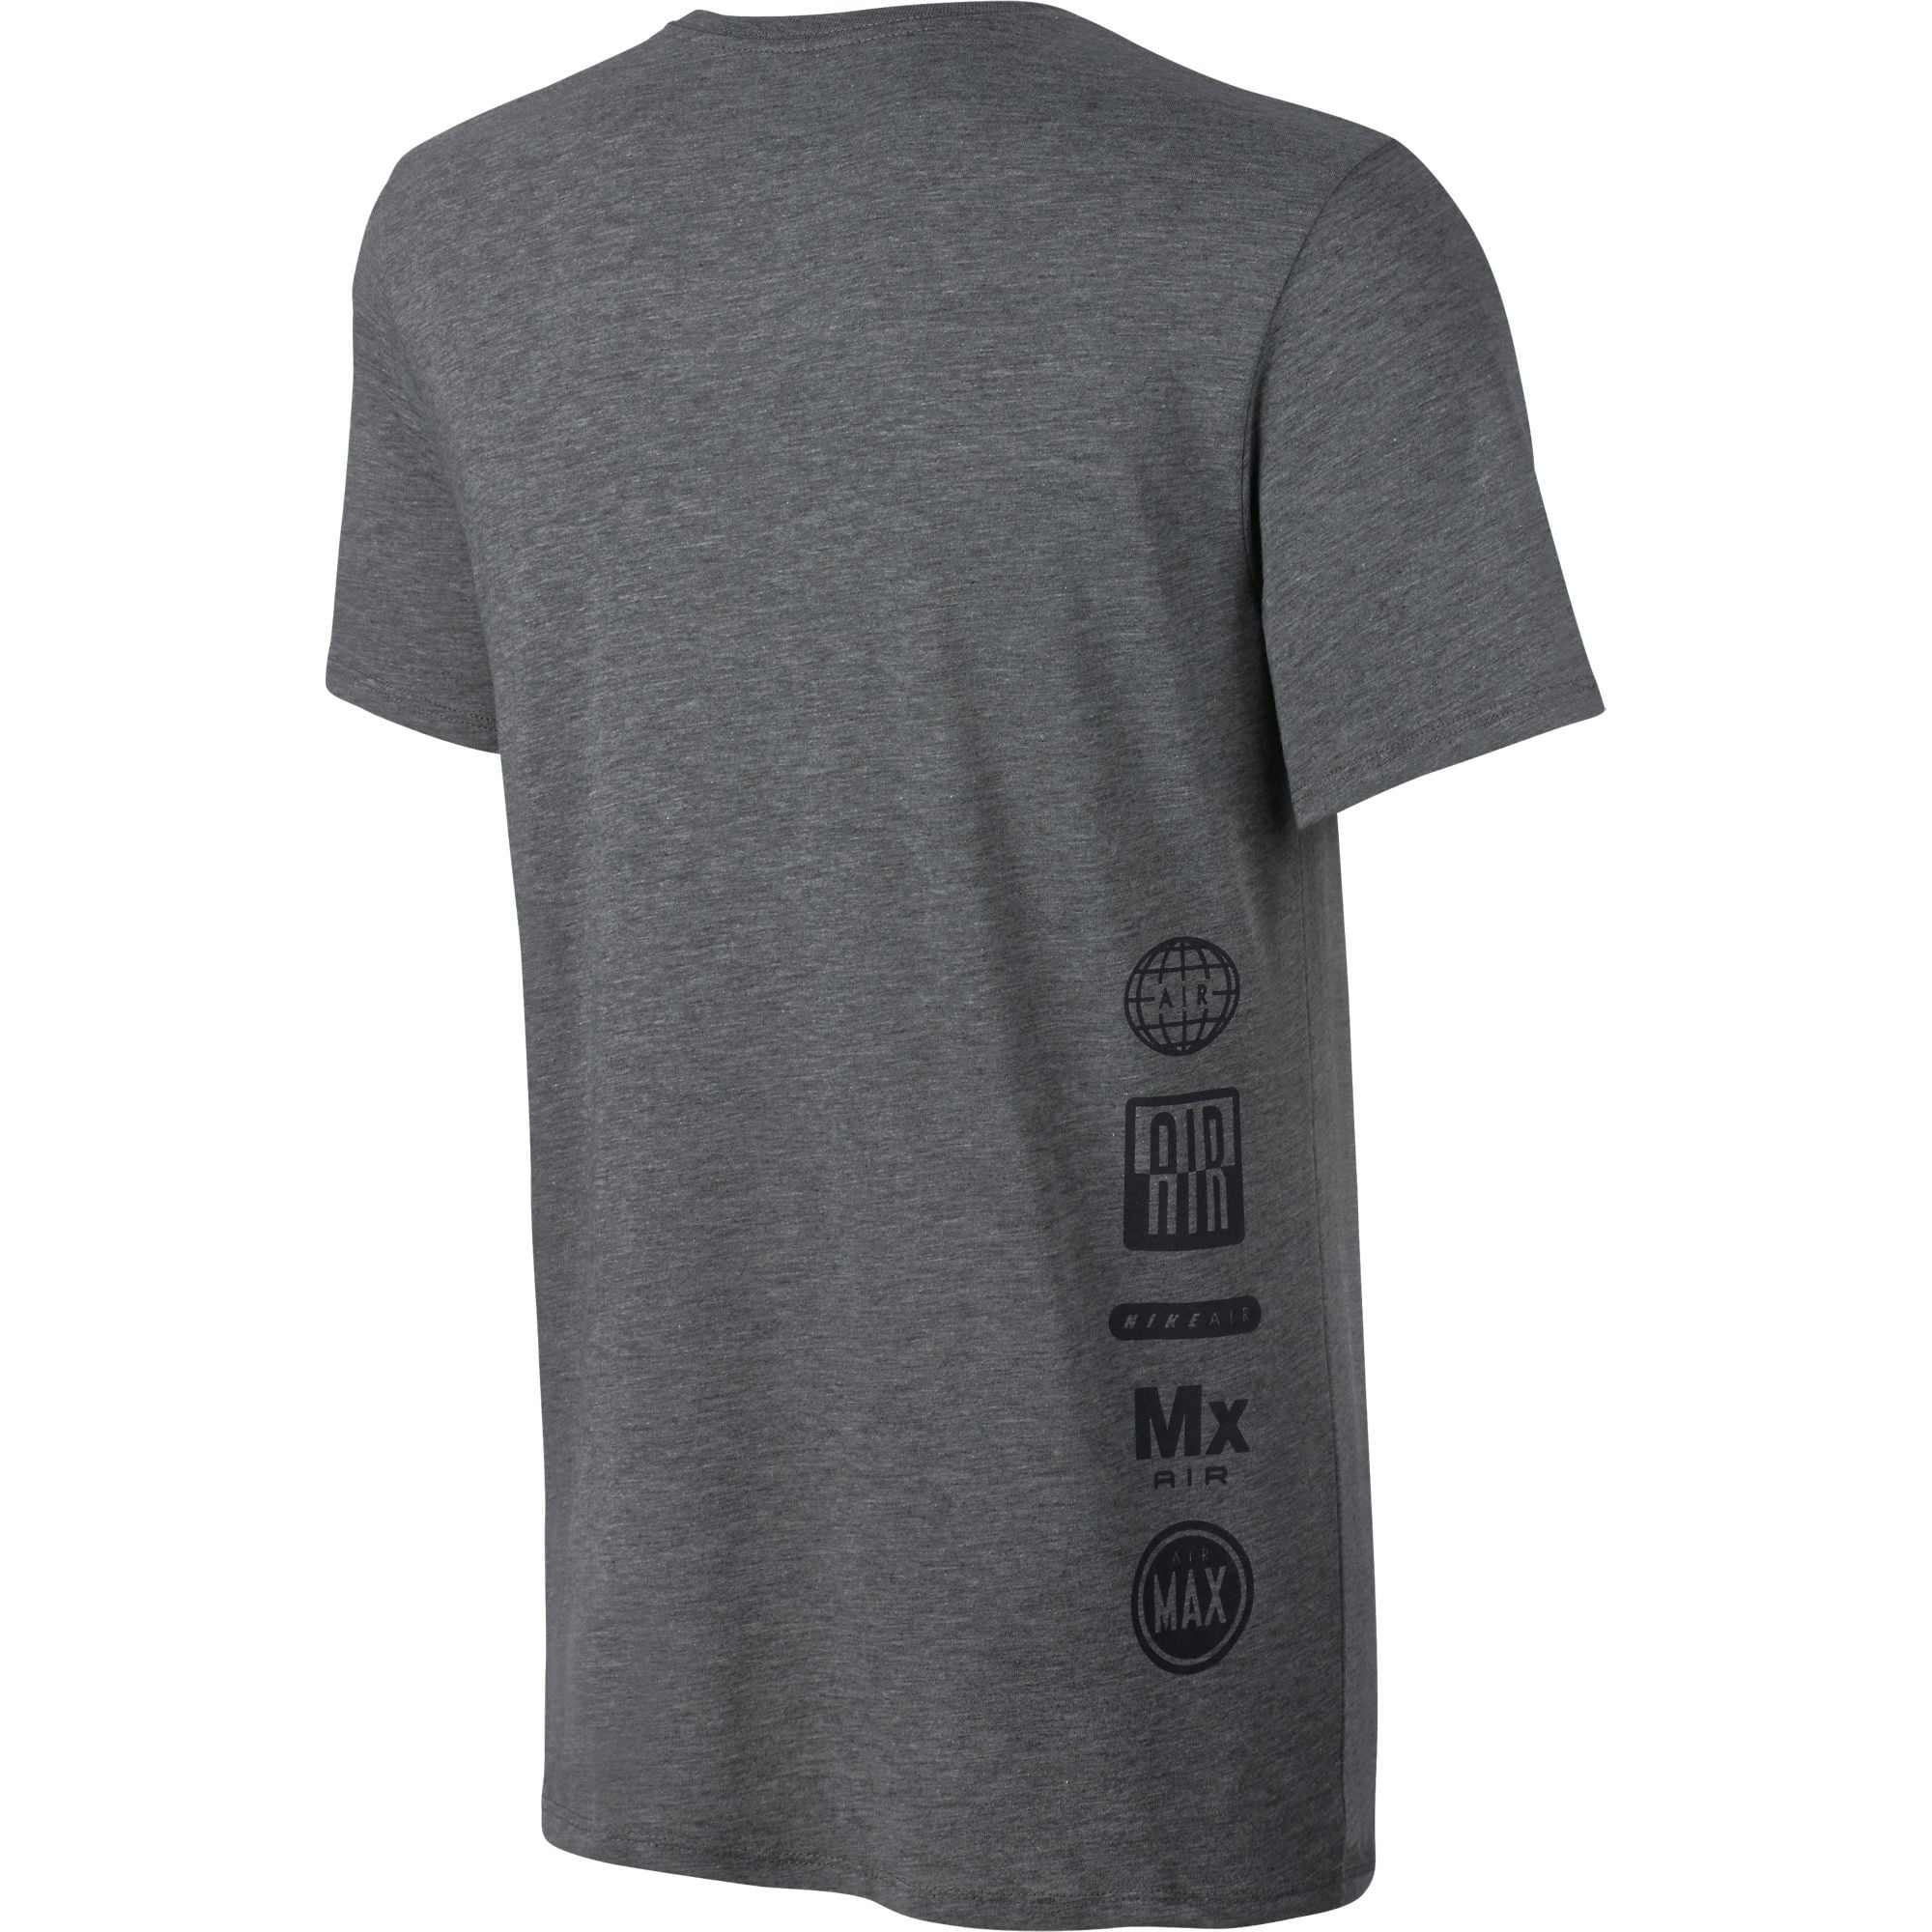 Nike Air Totem Men's T-Shirt Black/Grey 805220-091 -